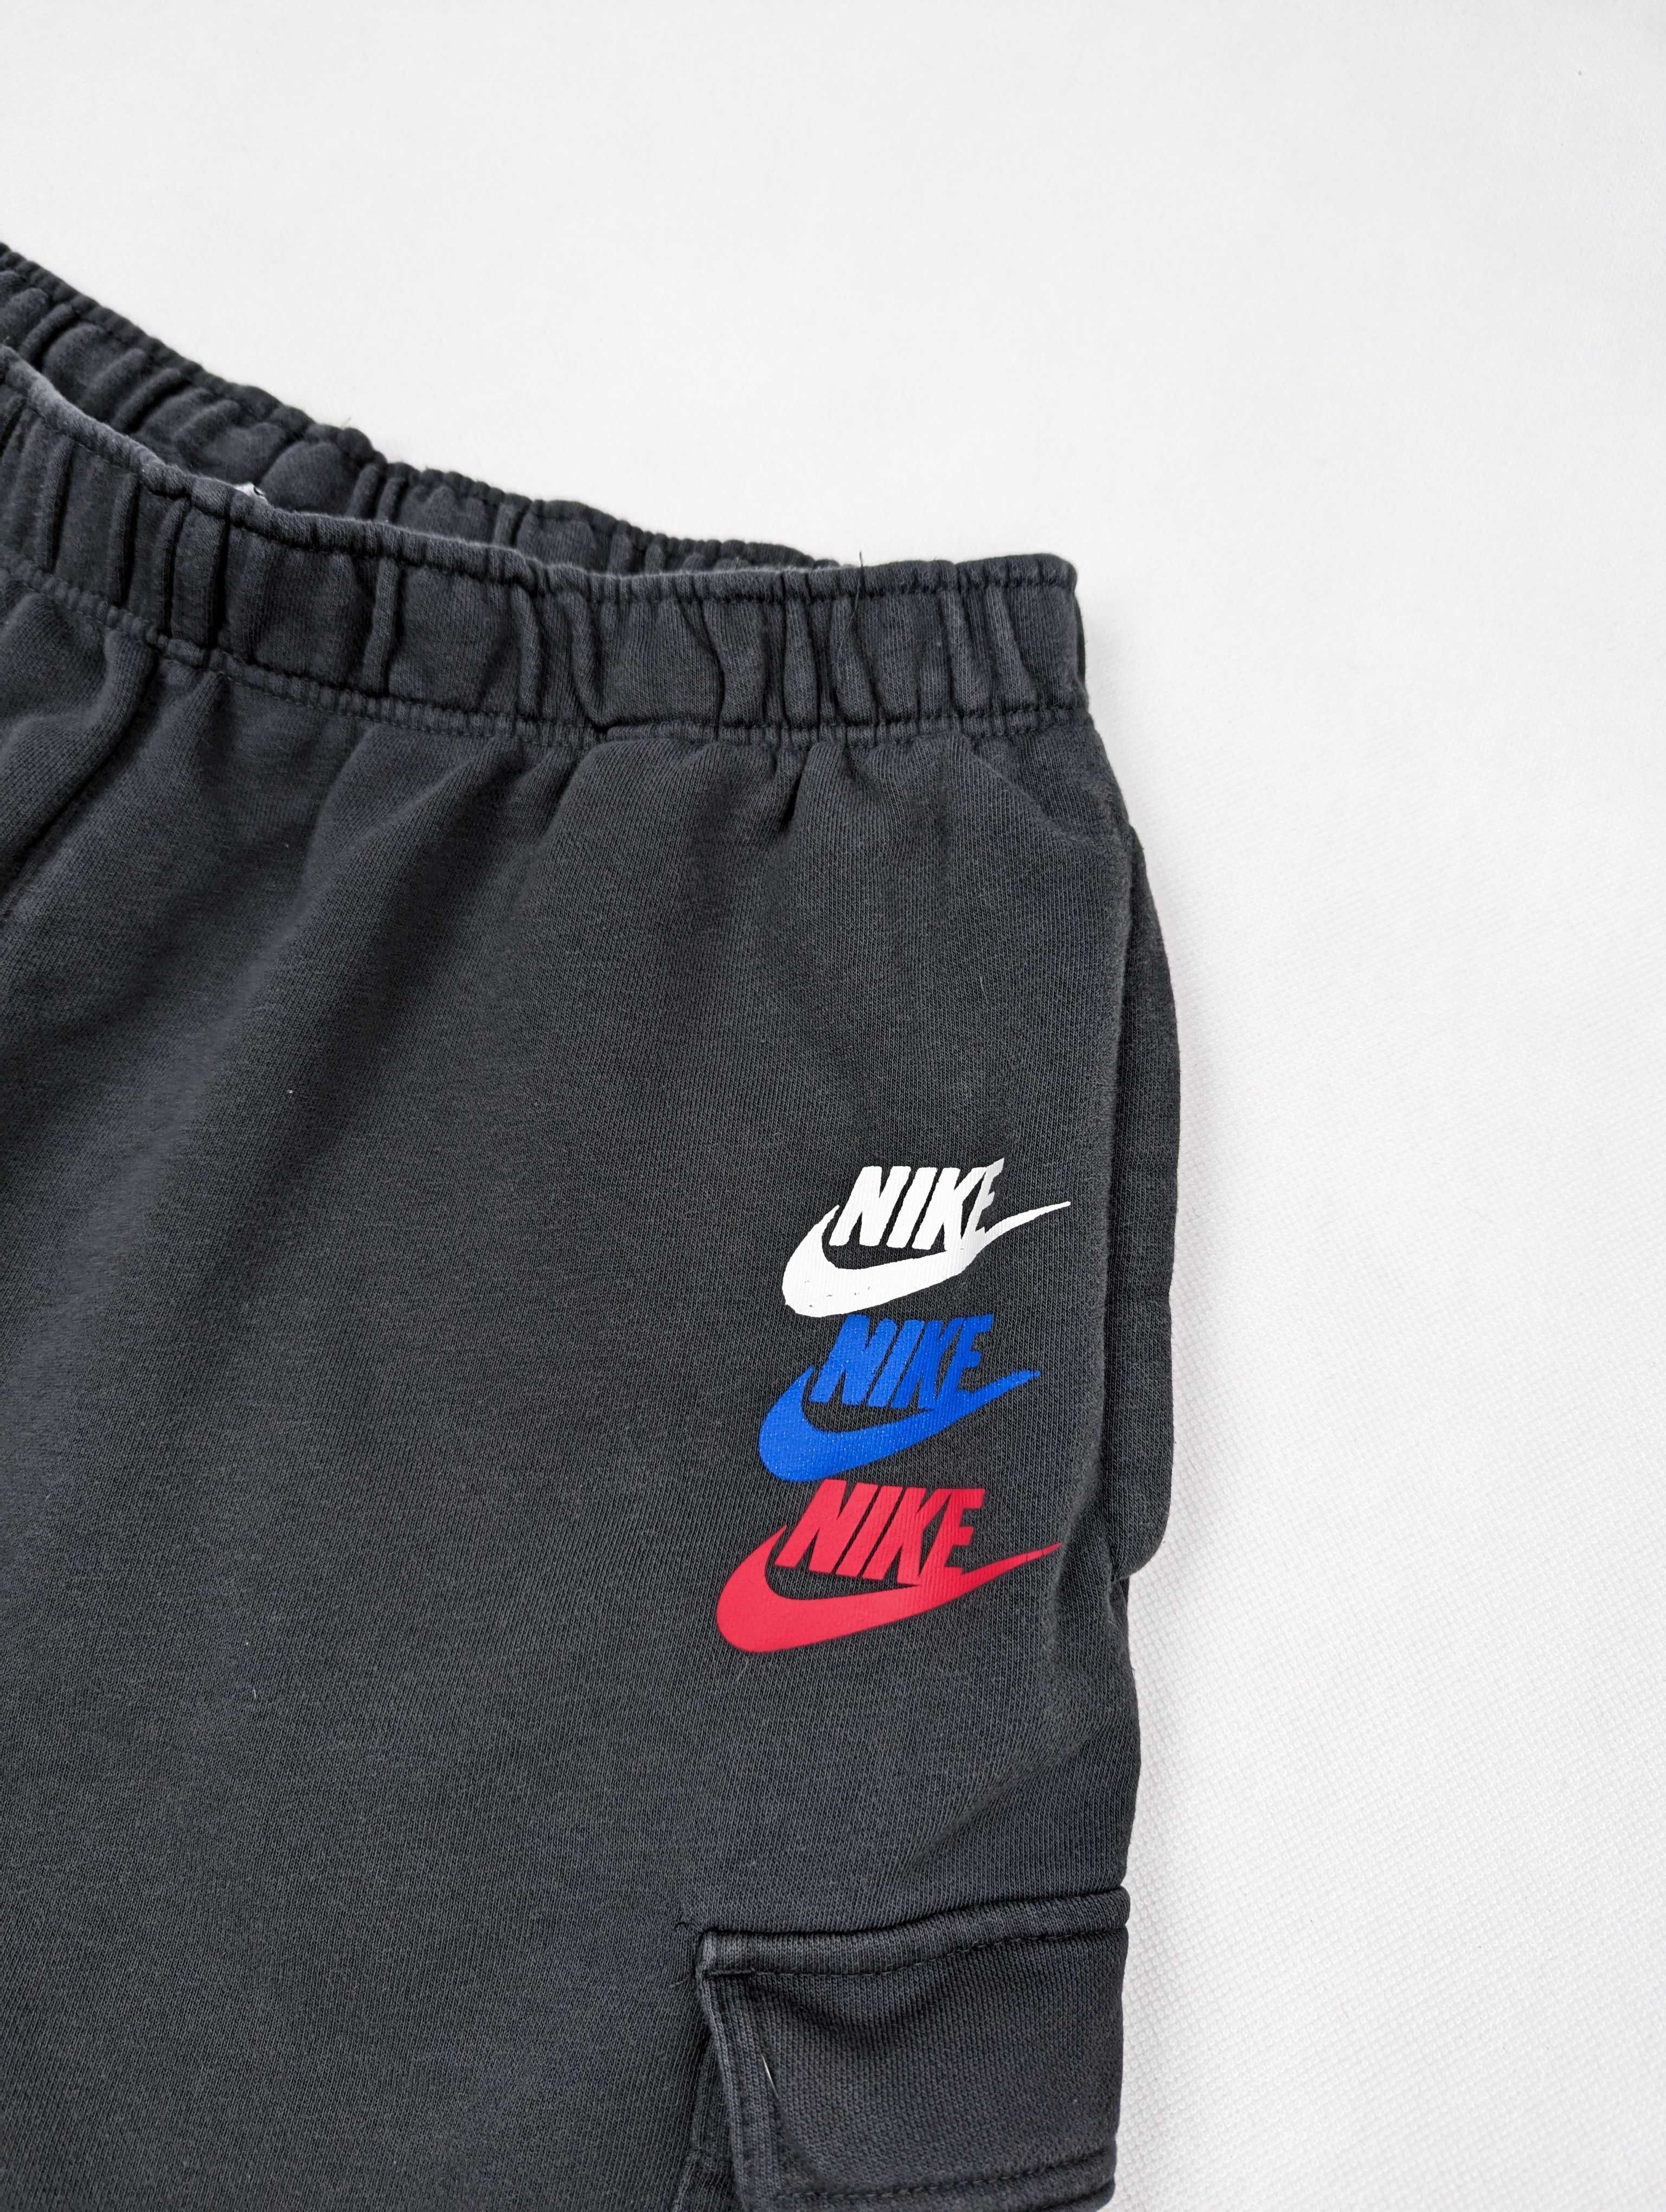 Nike szare spodenki dresowe XL logo